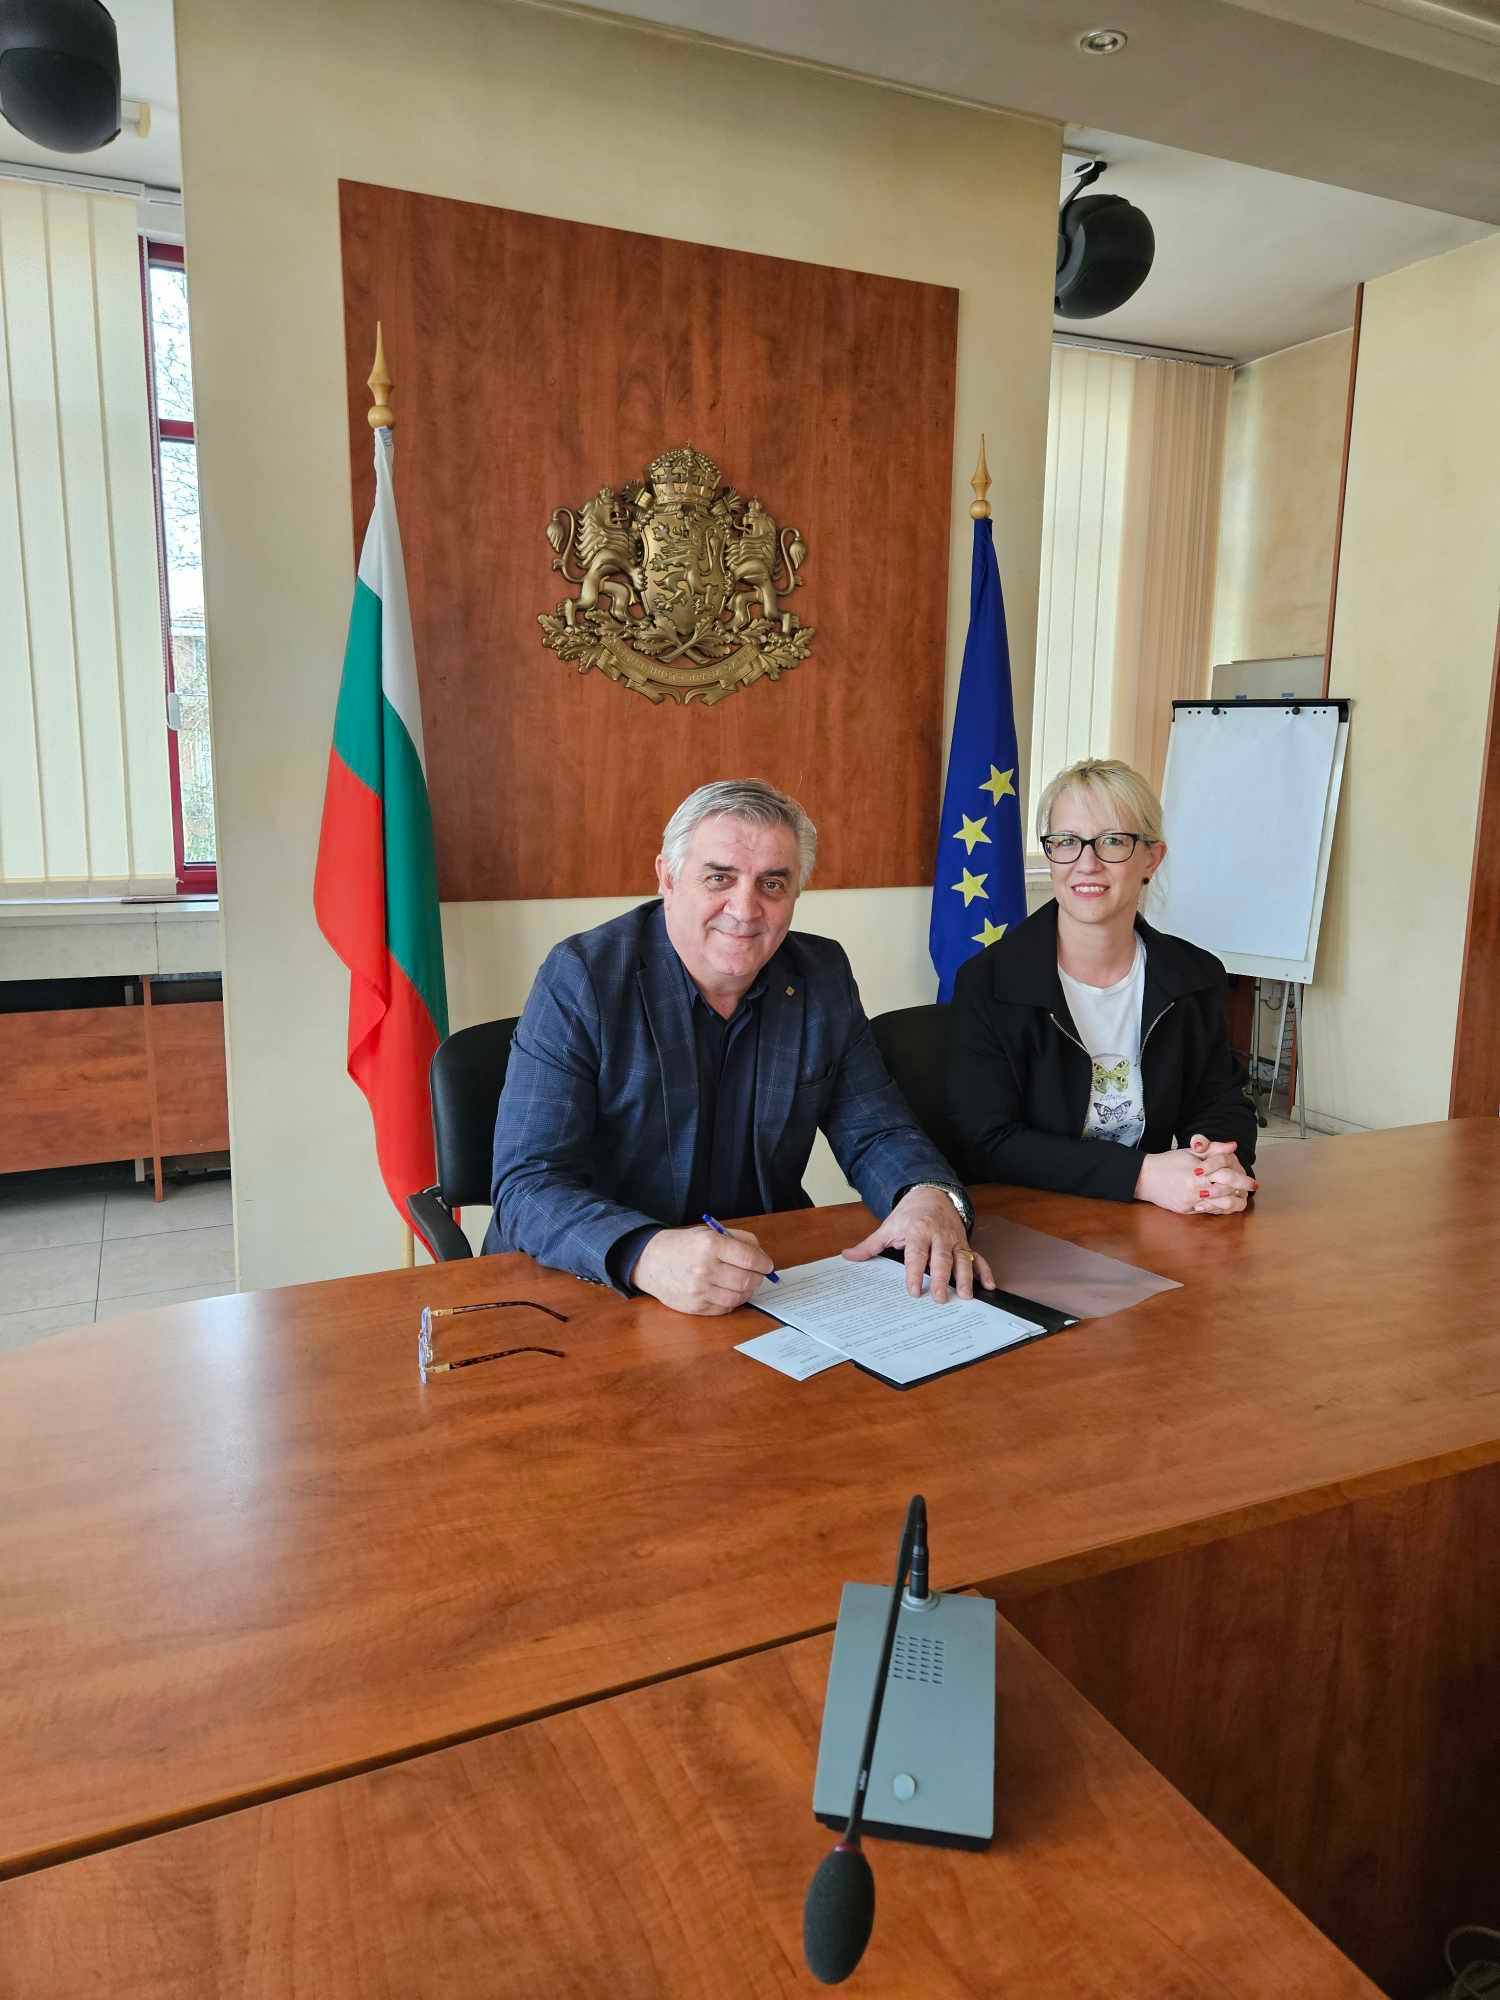 Кметът на Мездра Иван Аспарухов и главният счетоводител на общината Стела Костова